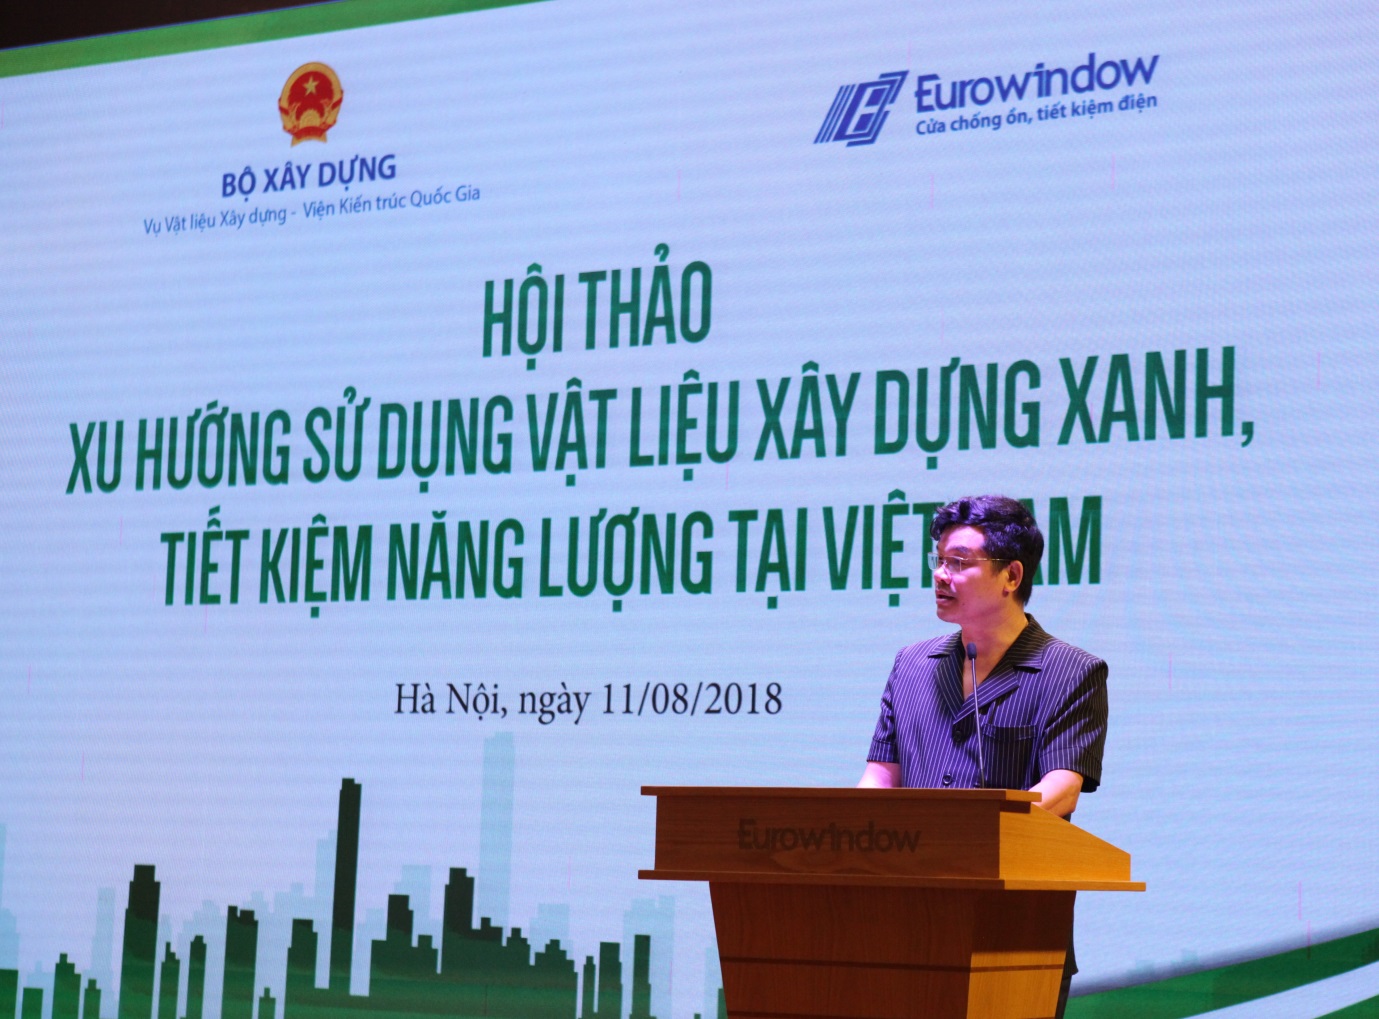 Ông Phạm Văn Bắc - Vụ trưởng Vụ vật liệu xây dựng (Bộ Xây dựng) phát biểu tại hội thảo “Xu hướng sử dụng vật liệu xây dựng xanh, tiết kiệm năng lượng tại Việt Nam”.